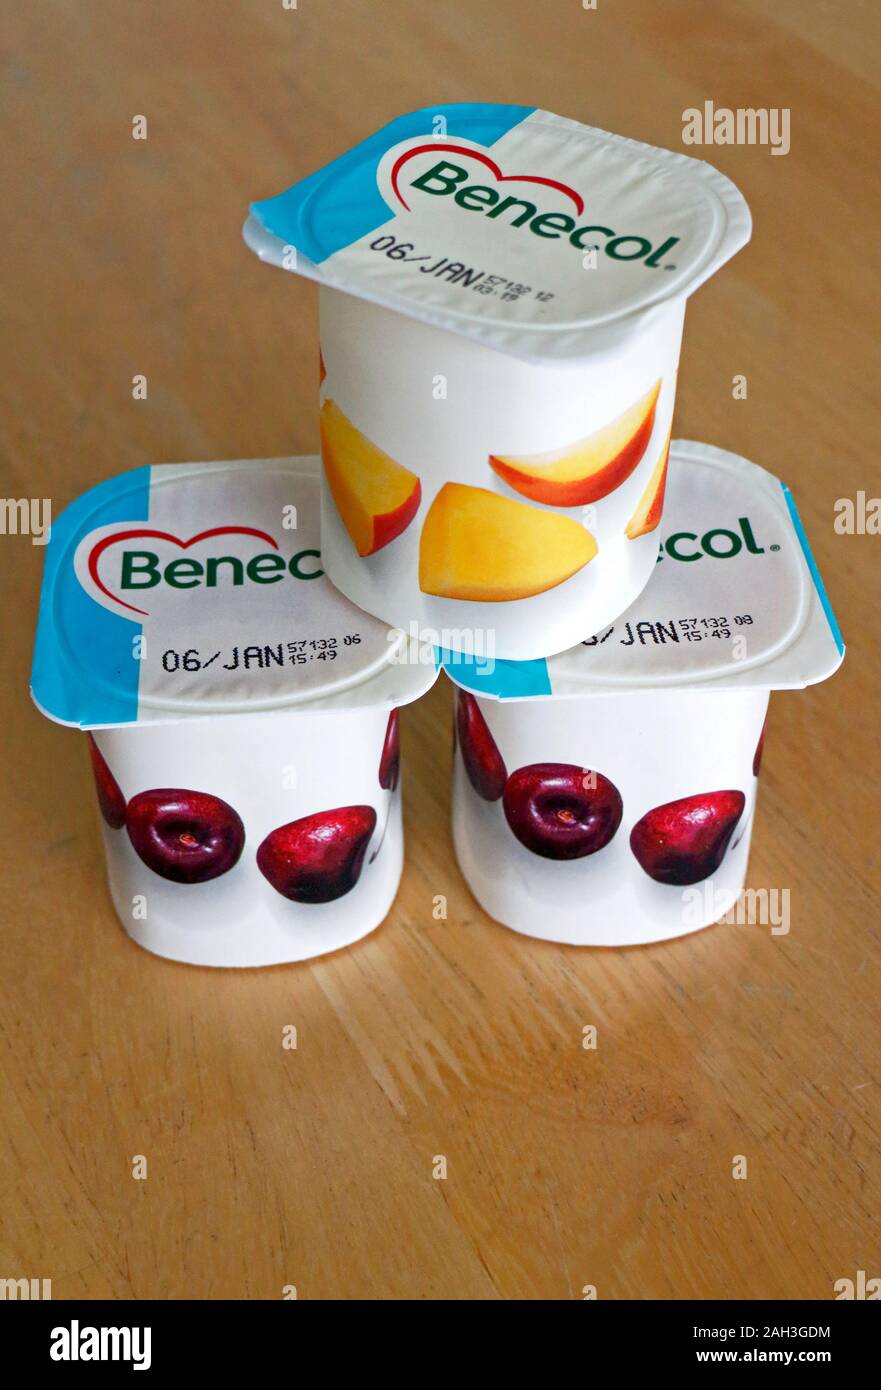 Tre vasetti di yogurt Benecol contenente stanoli vegetali per aiutare ad abbassare il colesterolo per proteggere contro la malattia di cuore coronarica. Foto Stock